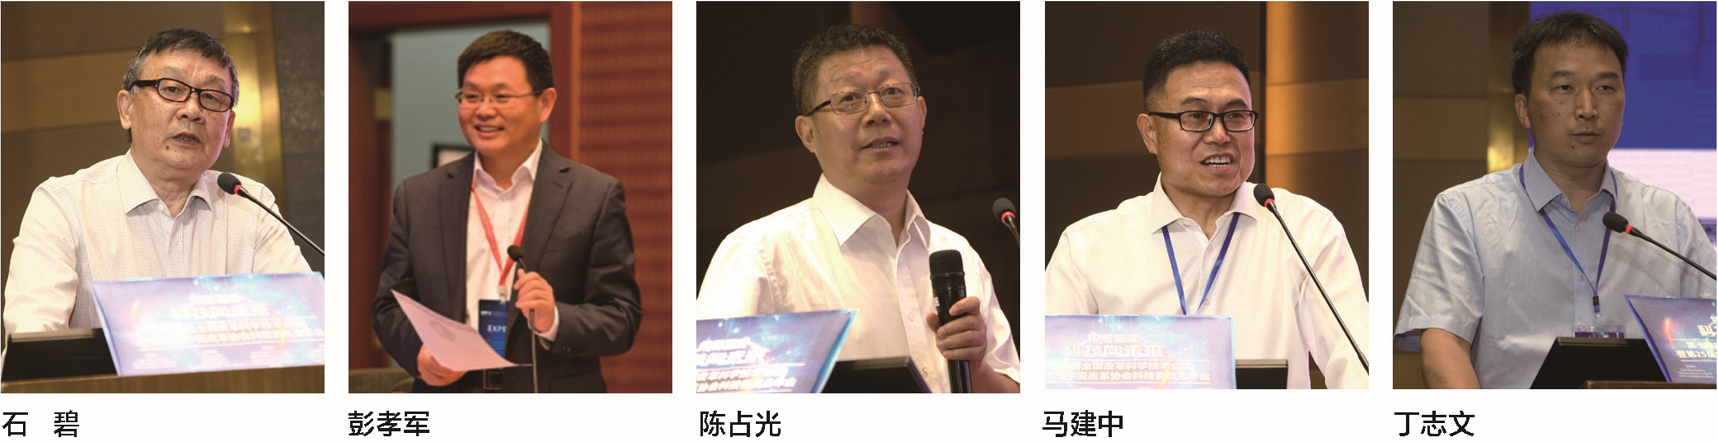 科技赋能皮革行业高质量发展 第十四届全国皮革科学技术会议暨第二十五届中国皮革协会科技委员会年会成功举办